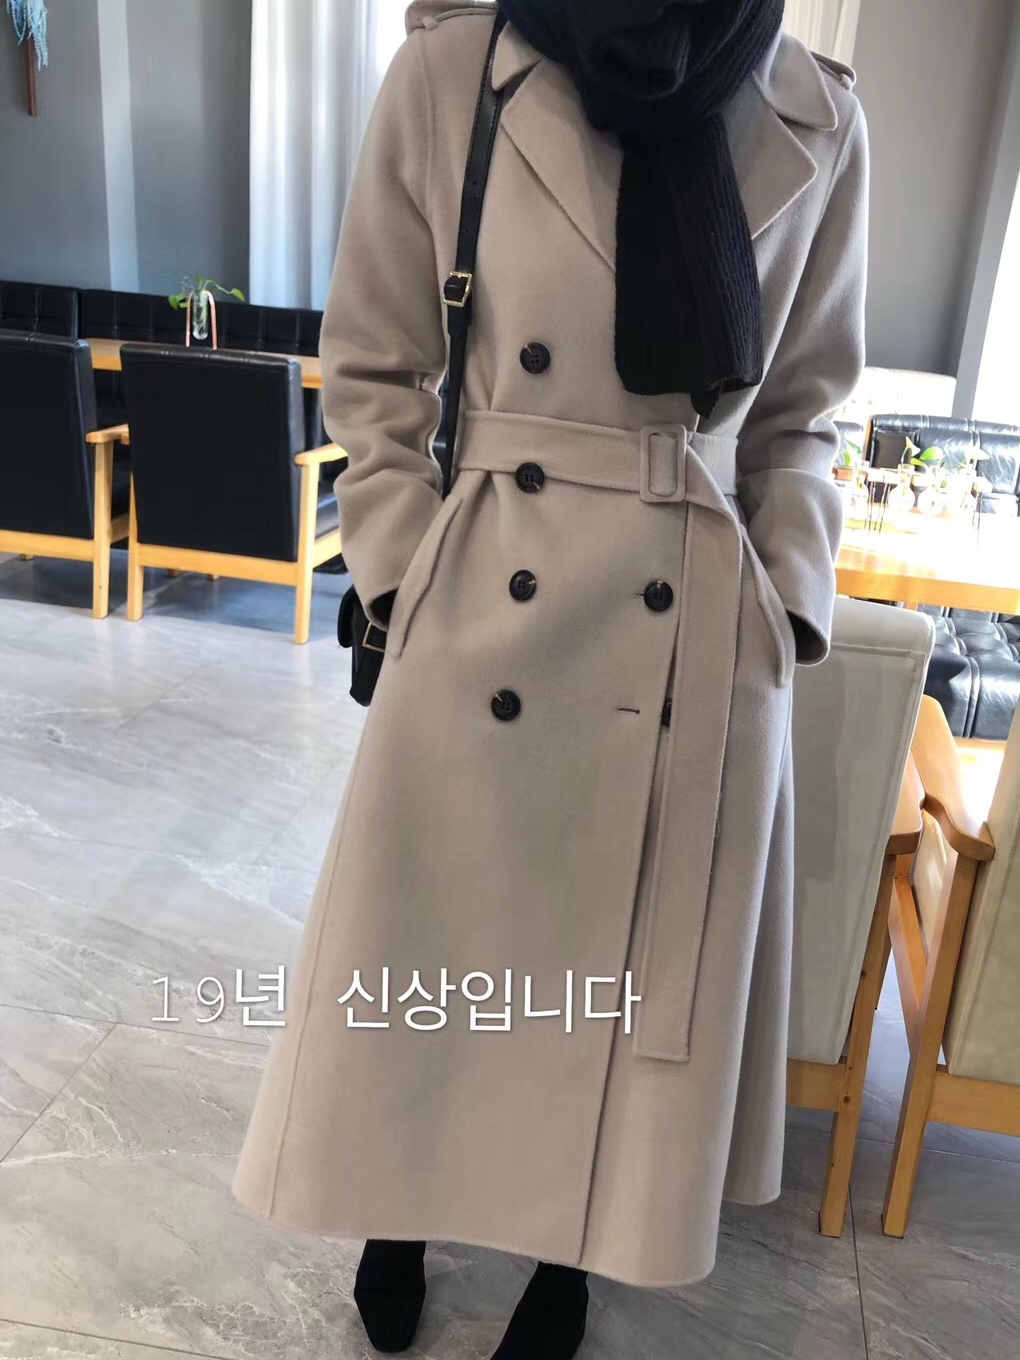 2019韩国冬新品 经典双排扣超长系腰带巴宝莉风格双面羊绒大衣女